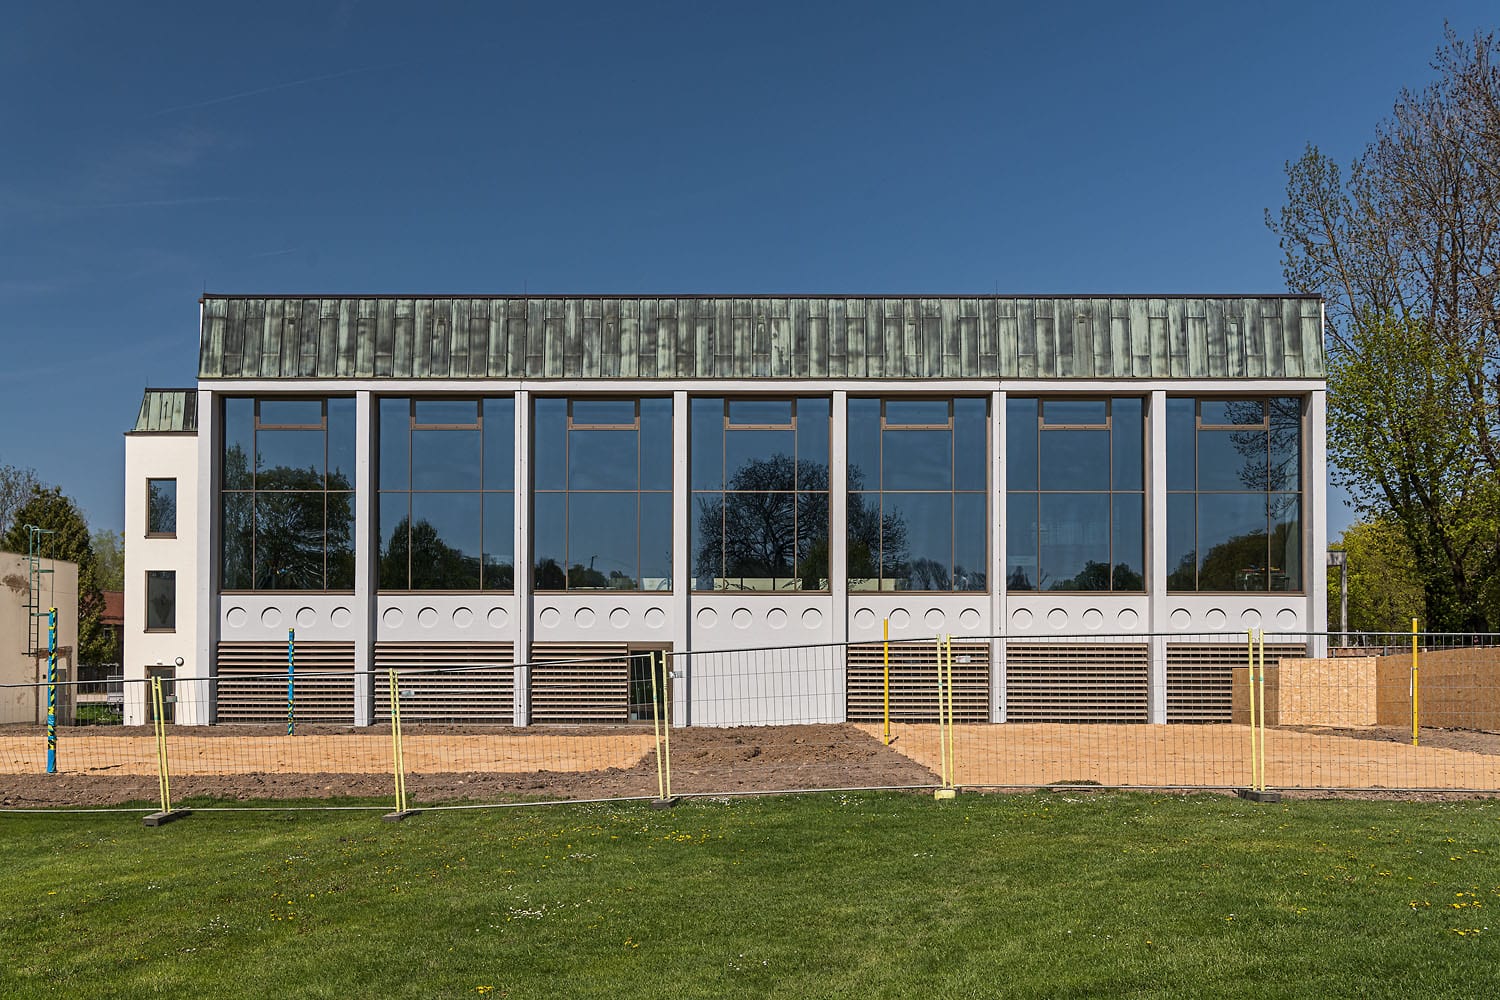 Plärrerbad Augsburg mit neuer Pfosten-Riegel-Fassade mit Sonnenschutzglas, feststehenden ABL-Lamellen, Fenster, Rauch- und Brandschutztüren